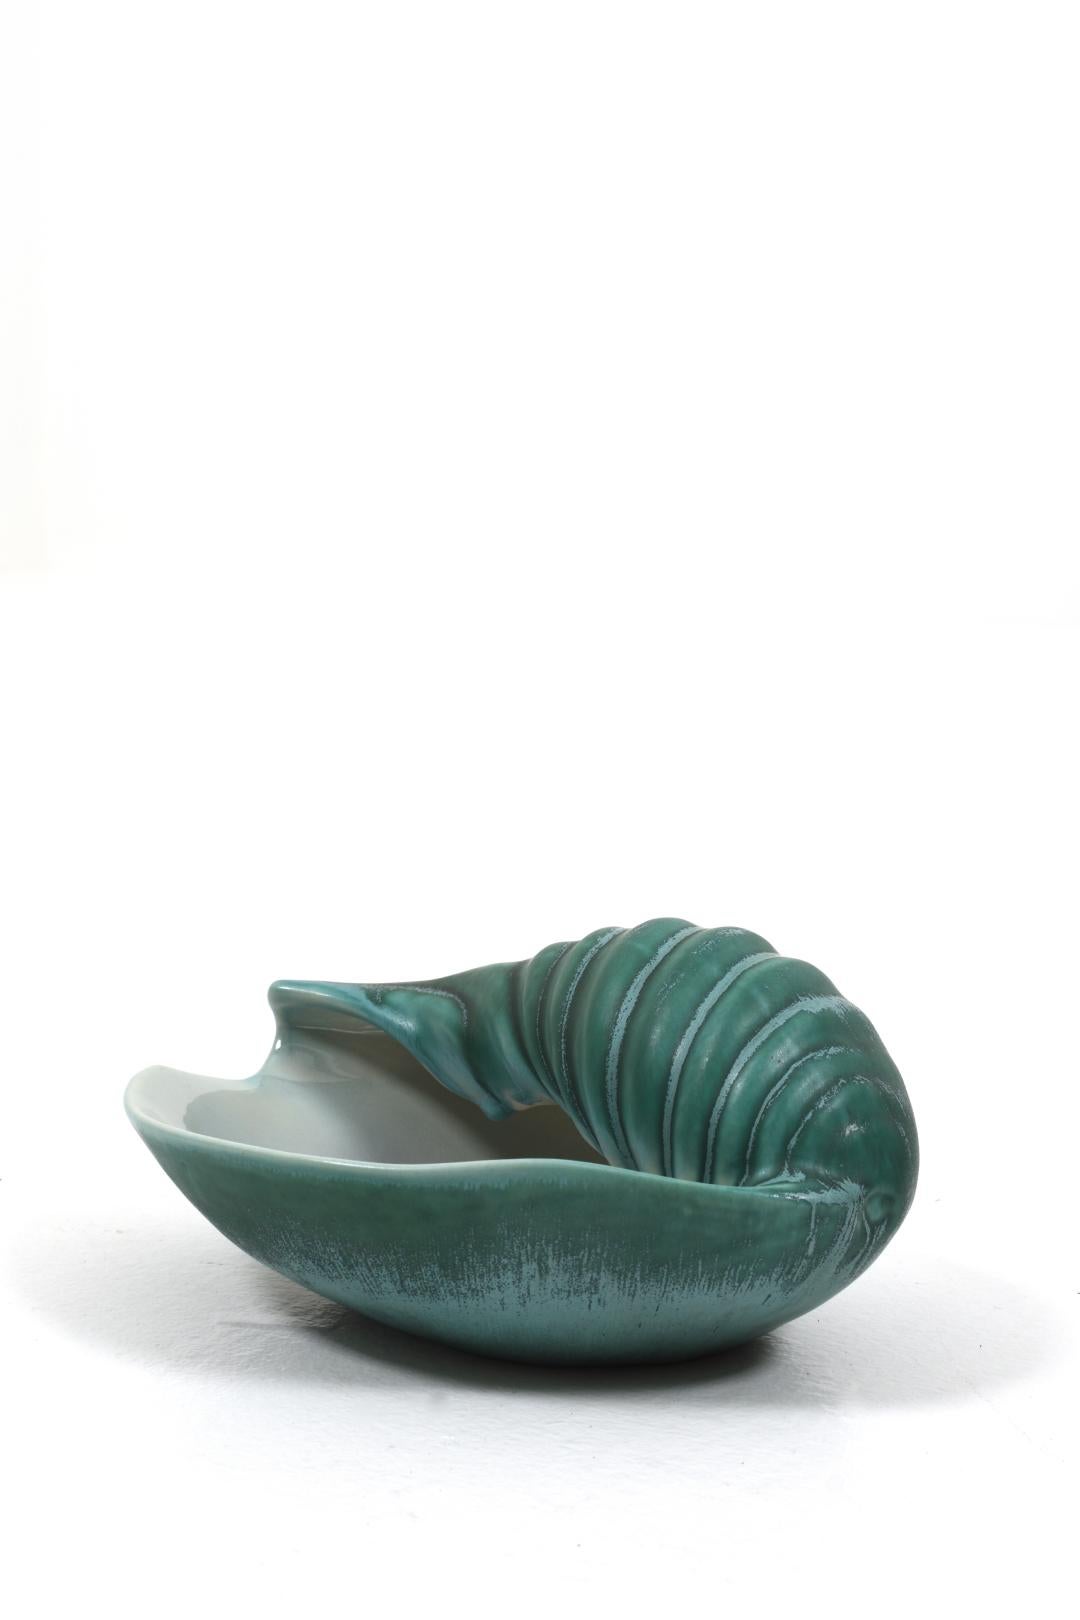 Scandinavian Modern Ceramic Seashell Bowl by Ewald Dahlskog for Bo Fajans, 1939 For Sale